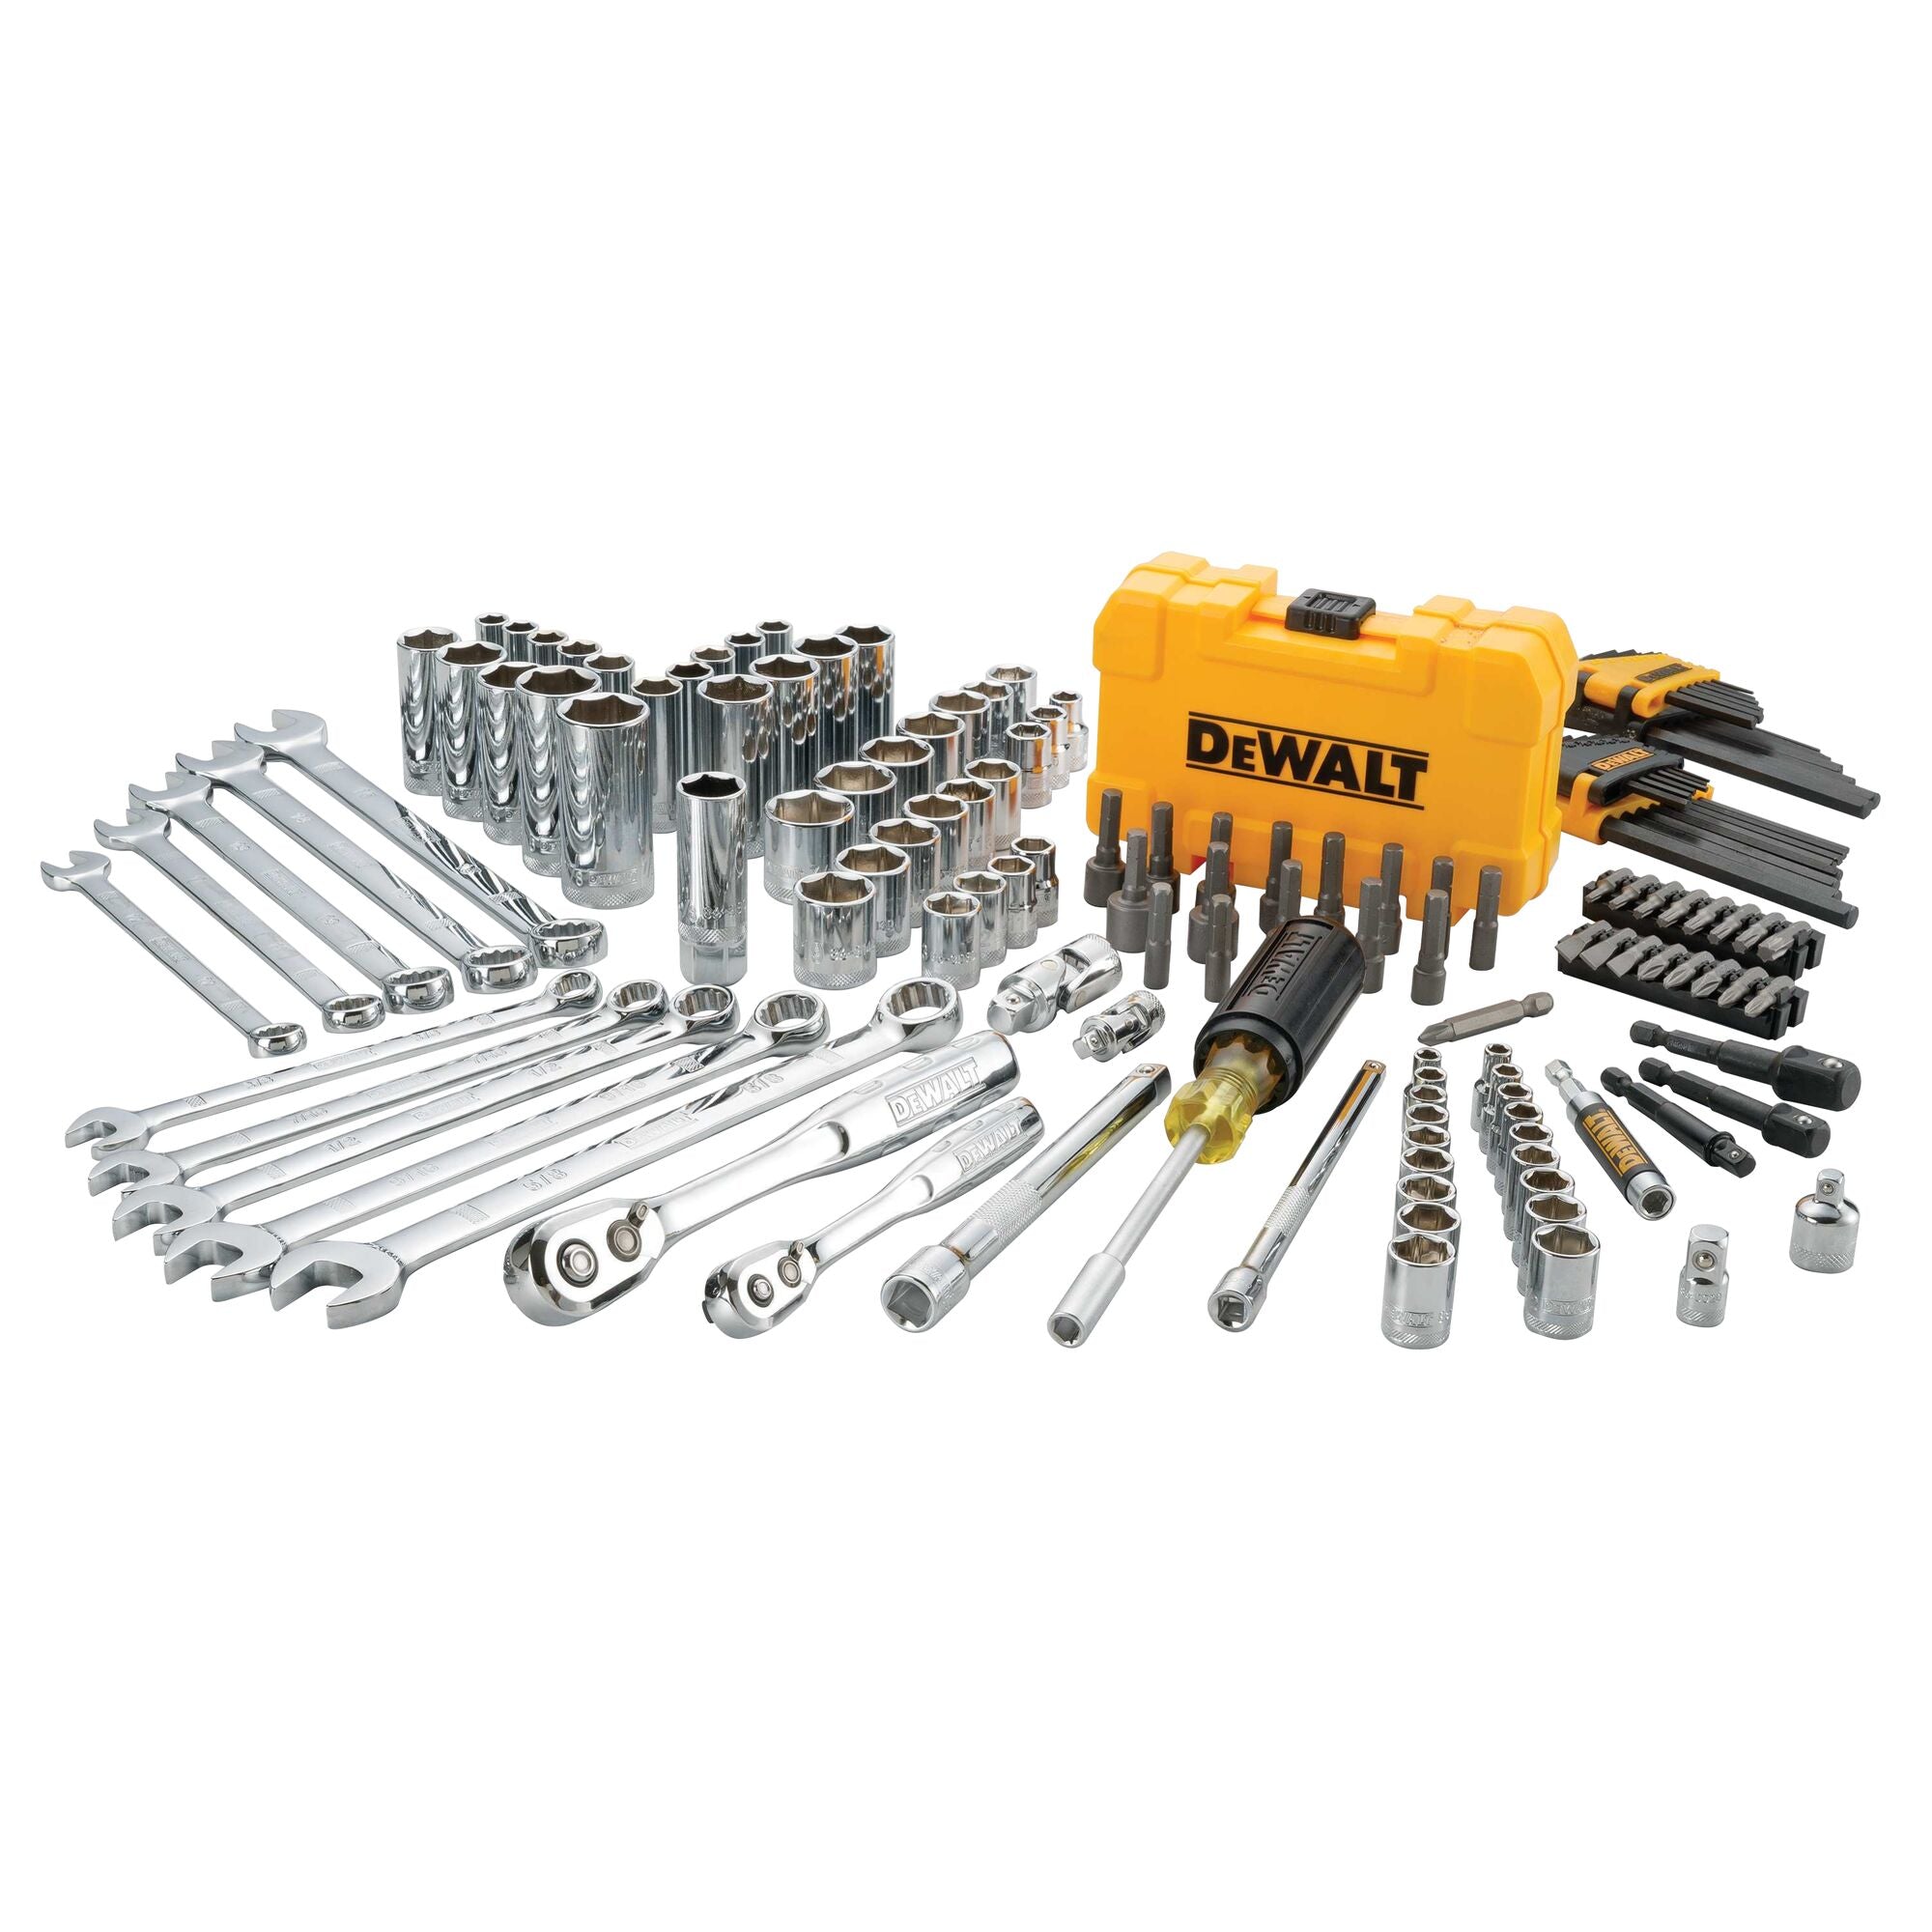 DeWALT 142 pc. 1/4" & 3/8" Drive Mechanics Tool Set